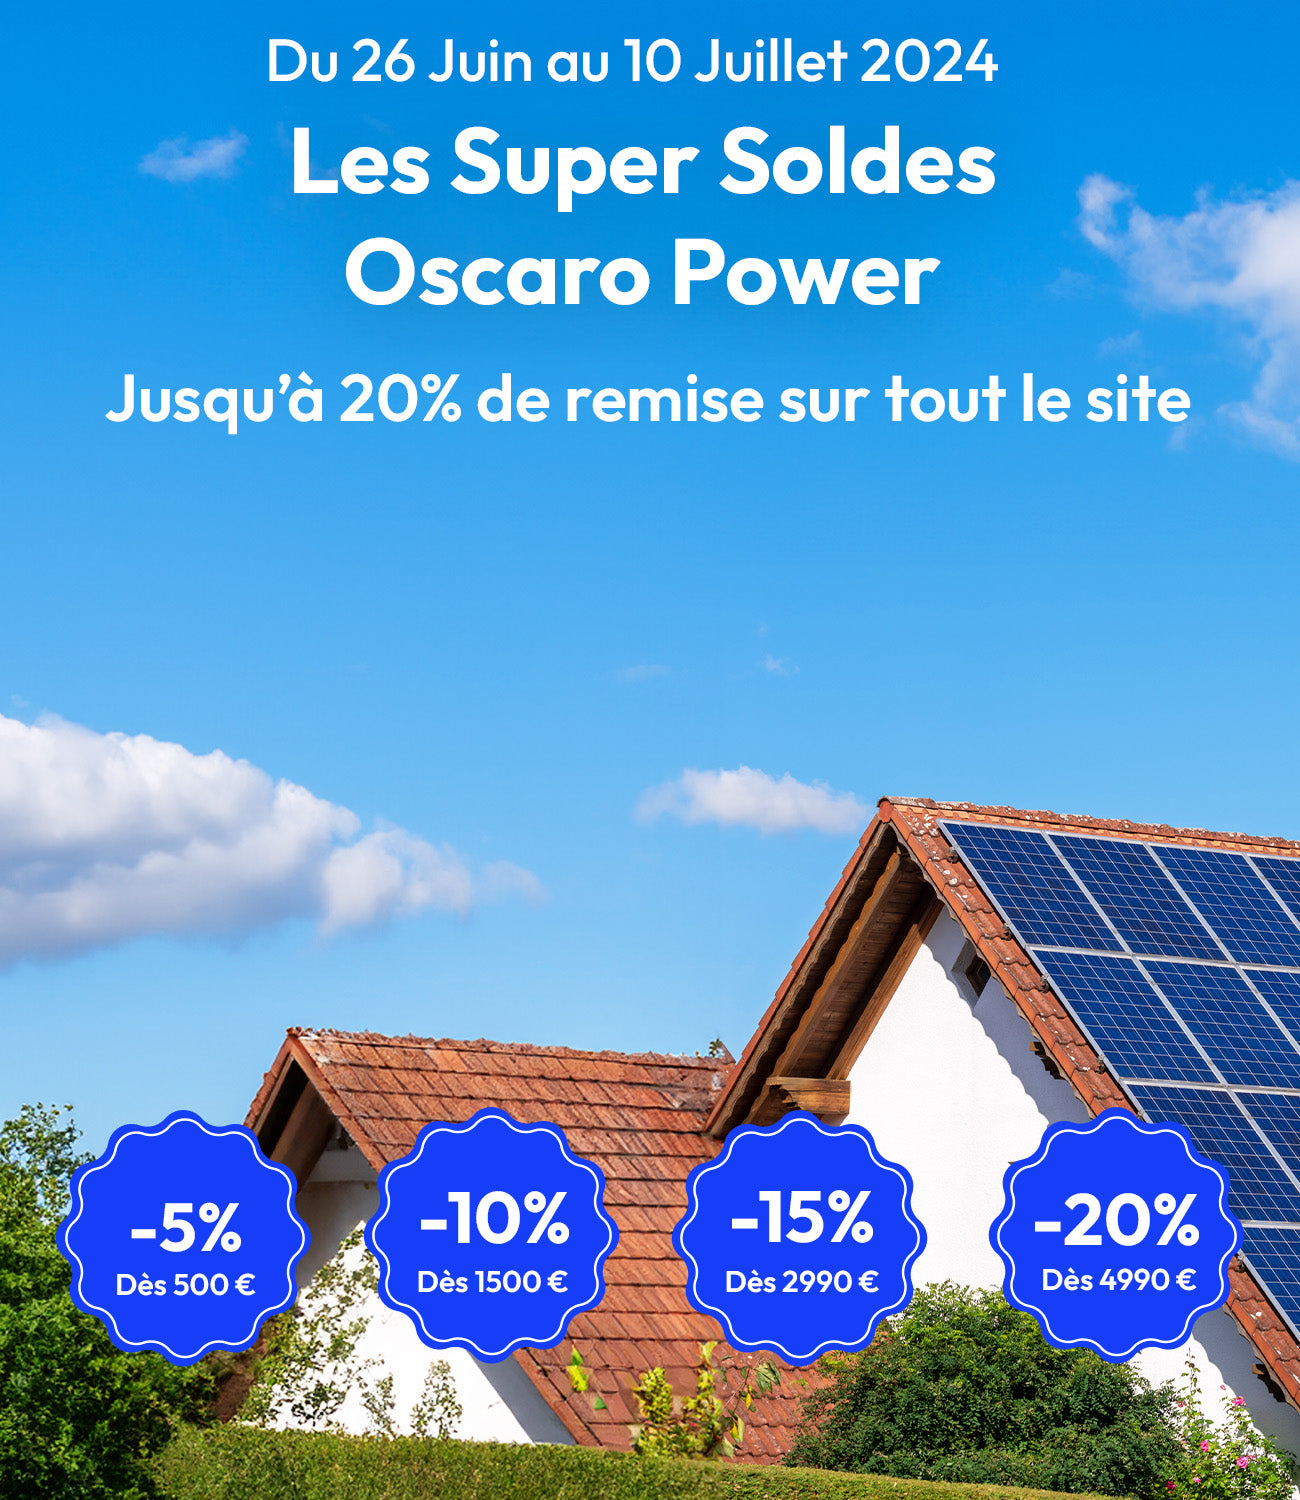 Maison avec panneaux solaires - pastilles promotionnelles Soldes Oscaro Power